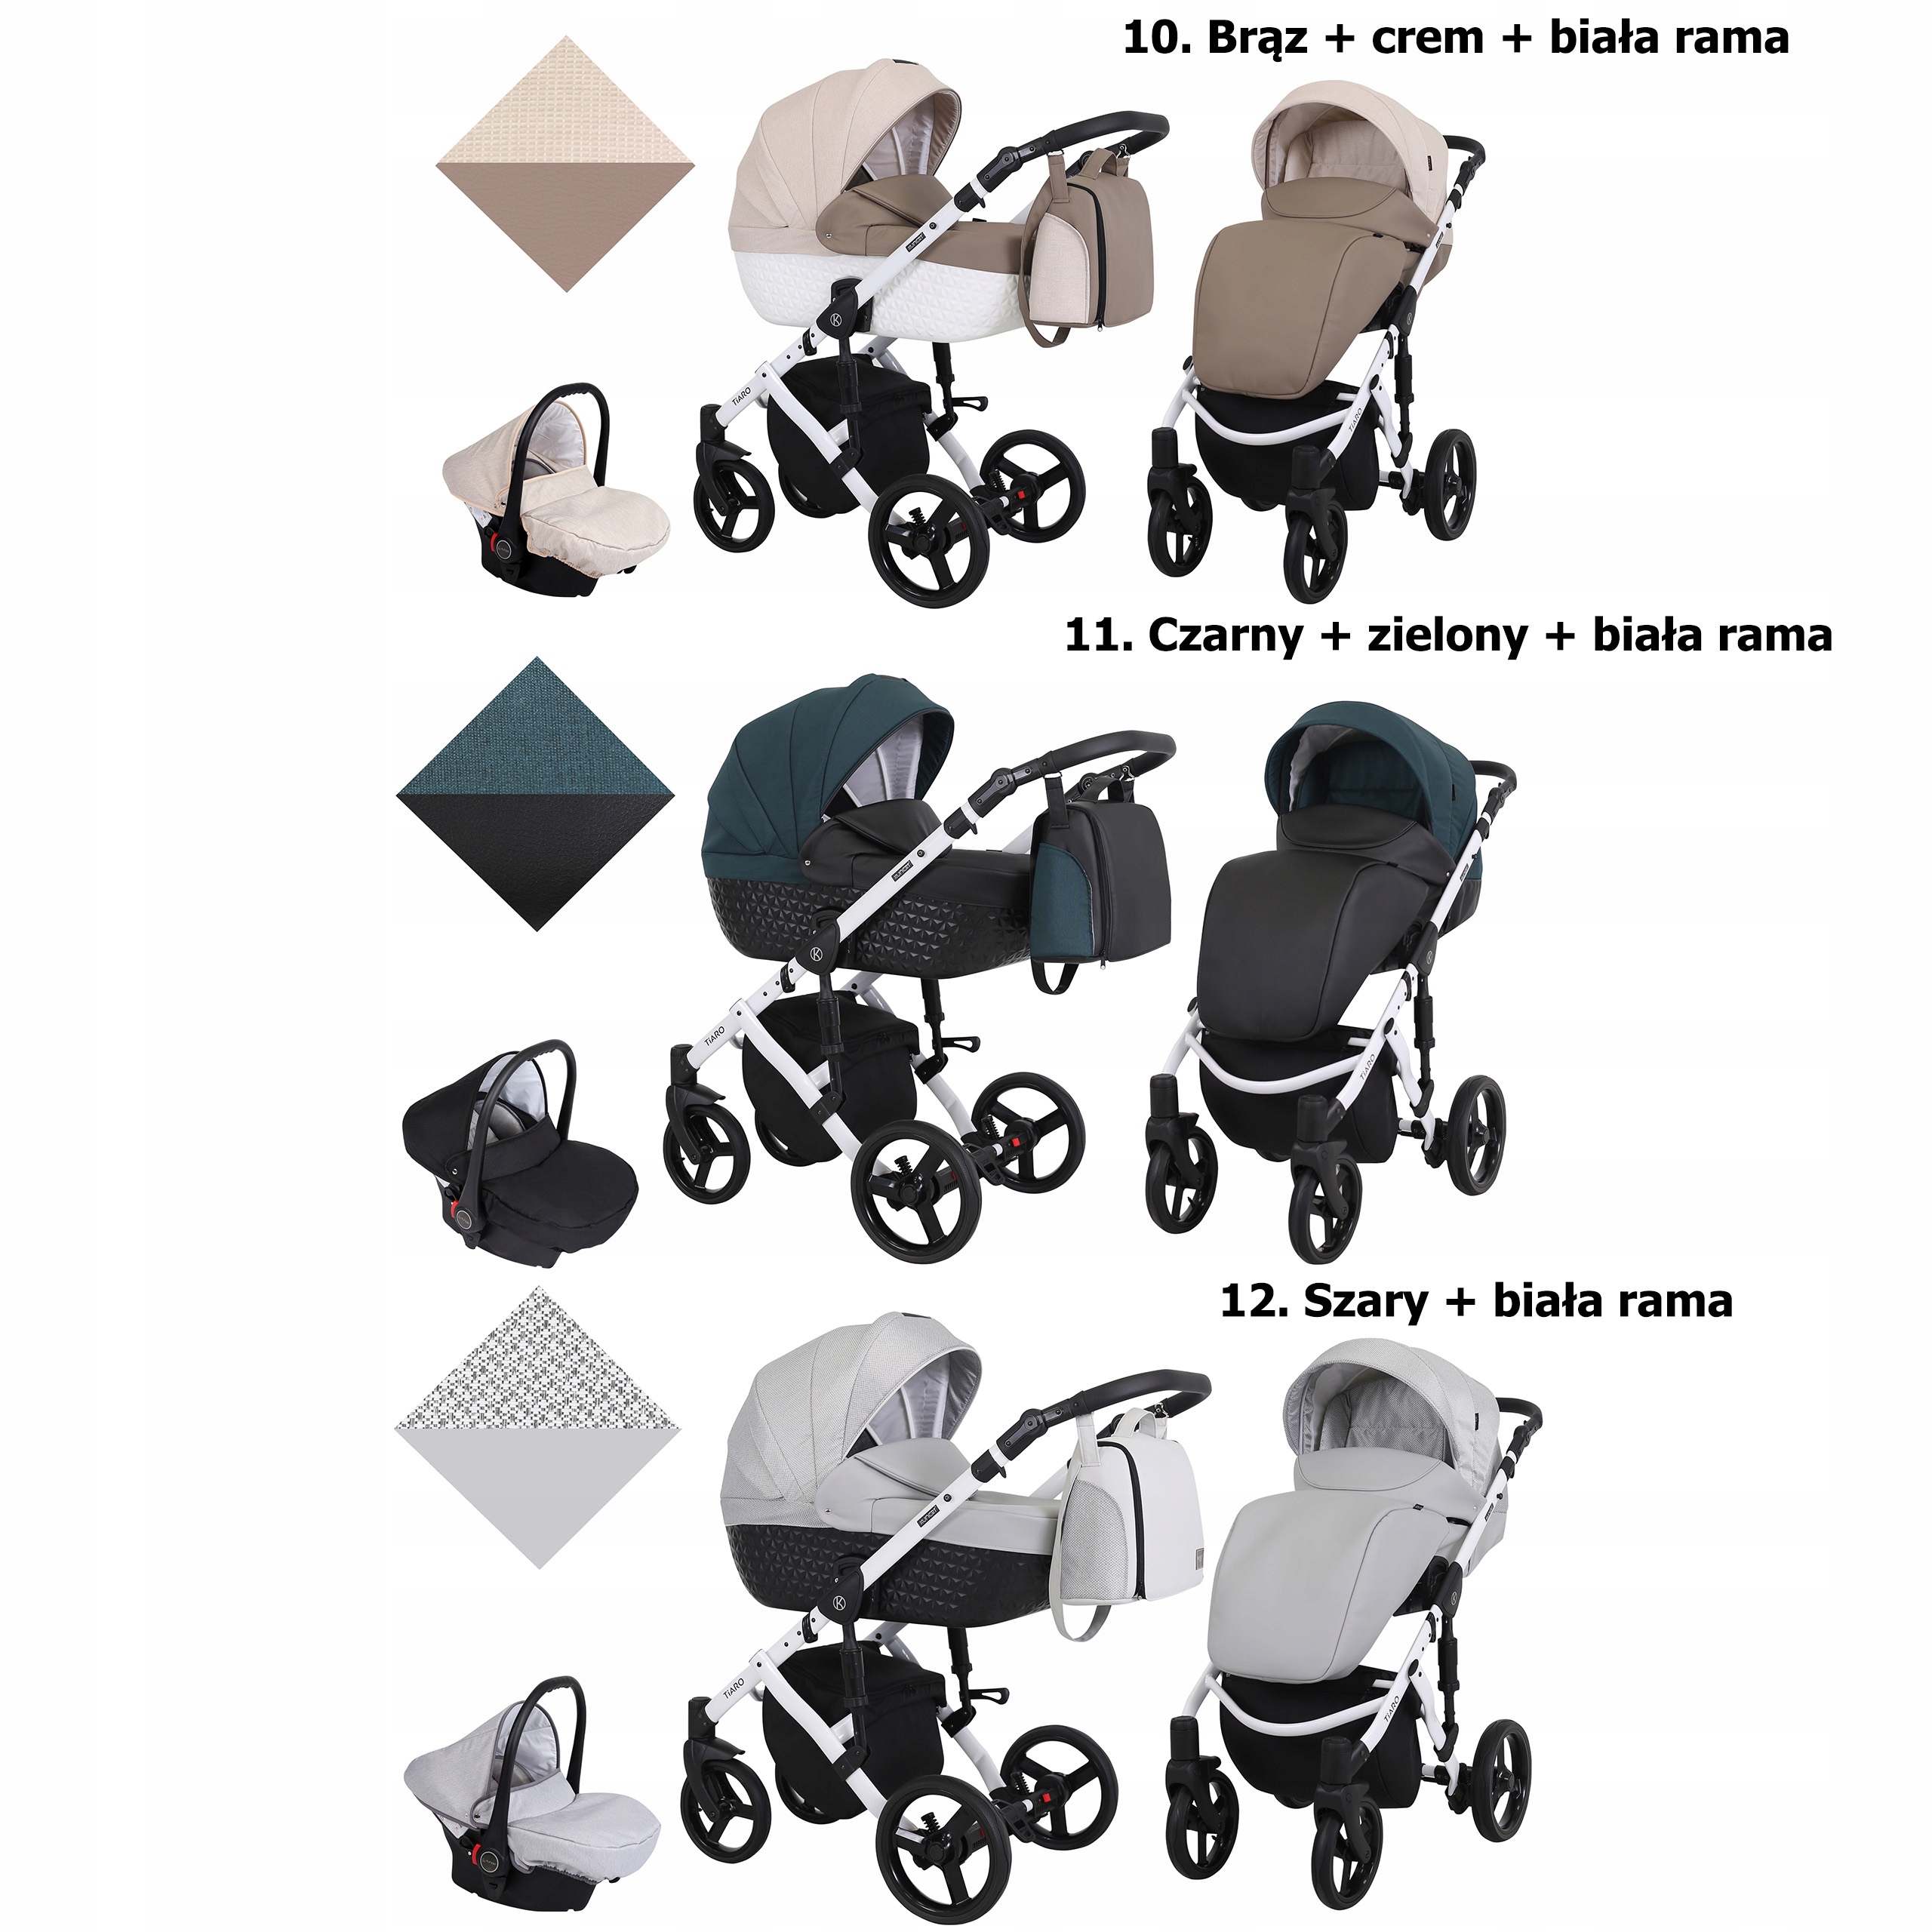 TIARO 3в1 детская коляска Kunert аксессуары в комплекте адаптеры для сидений дождевик пеленальный коврик москитная сетка ножка сумка для коляски подстаканник